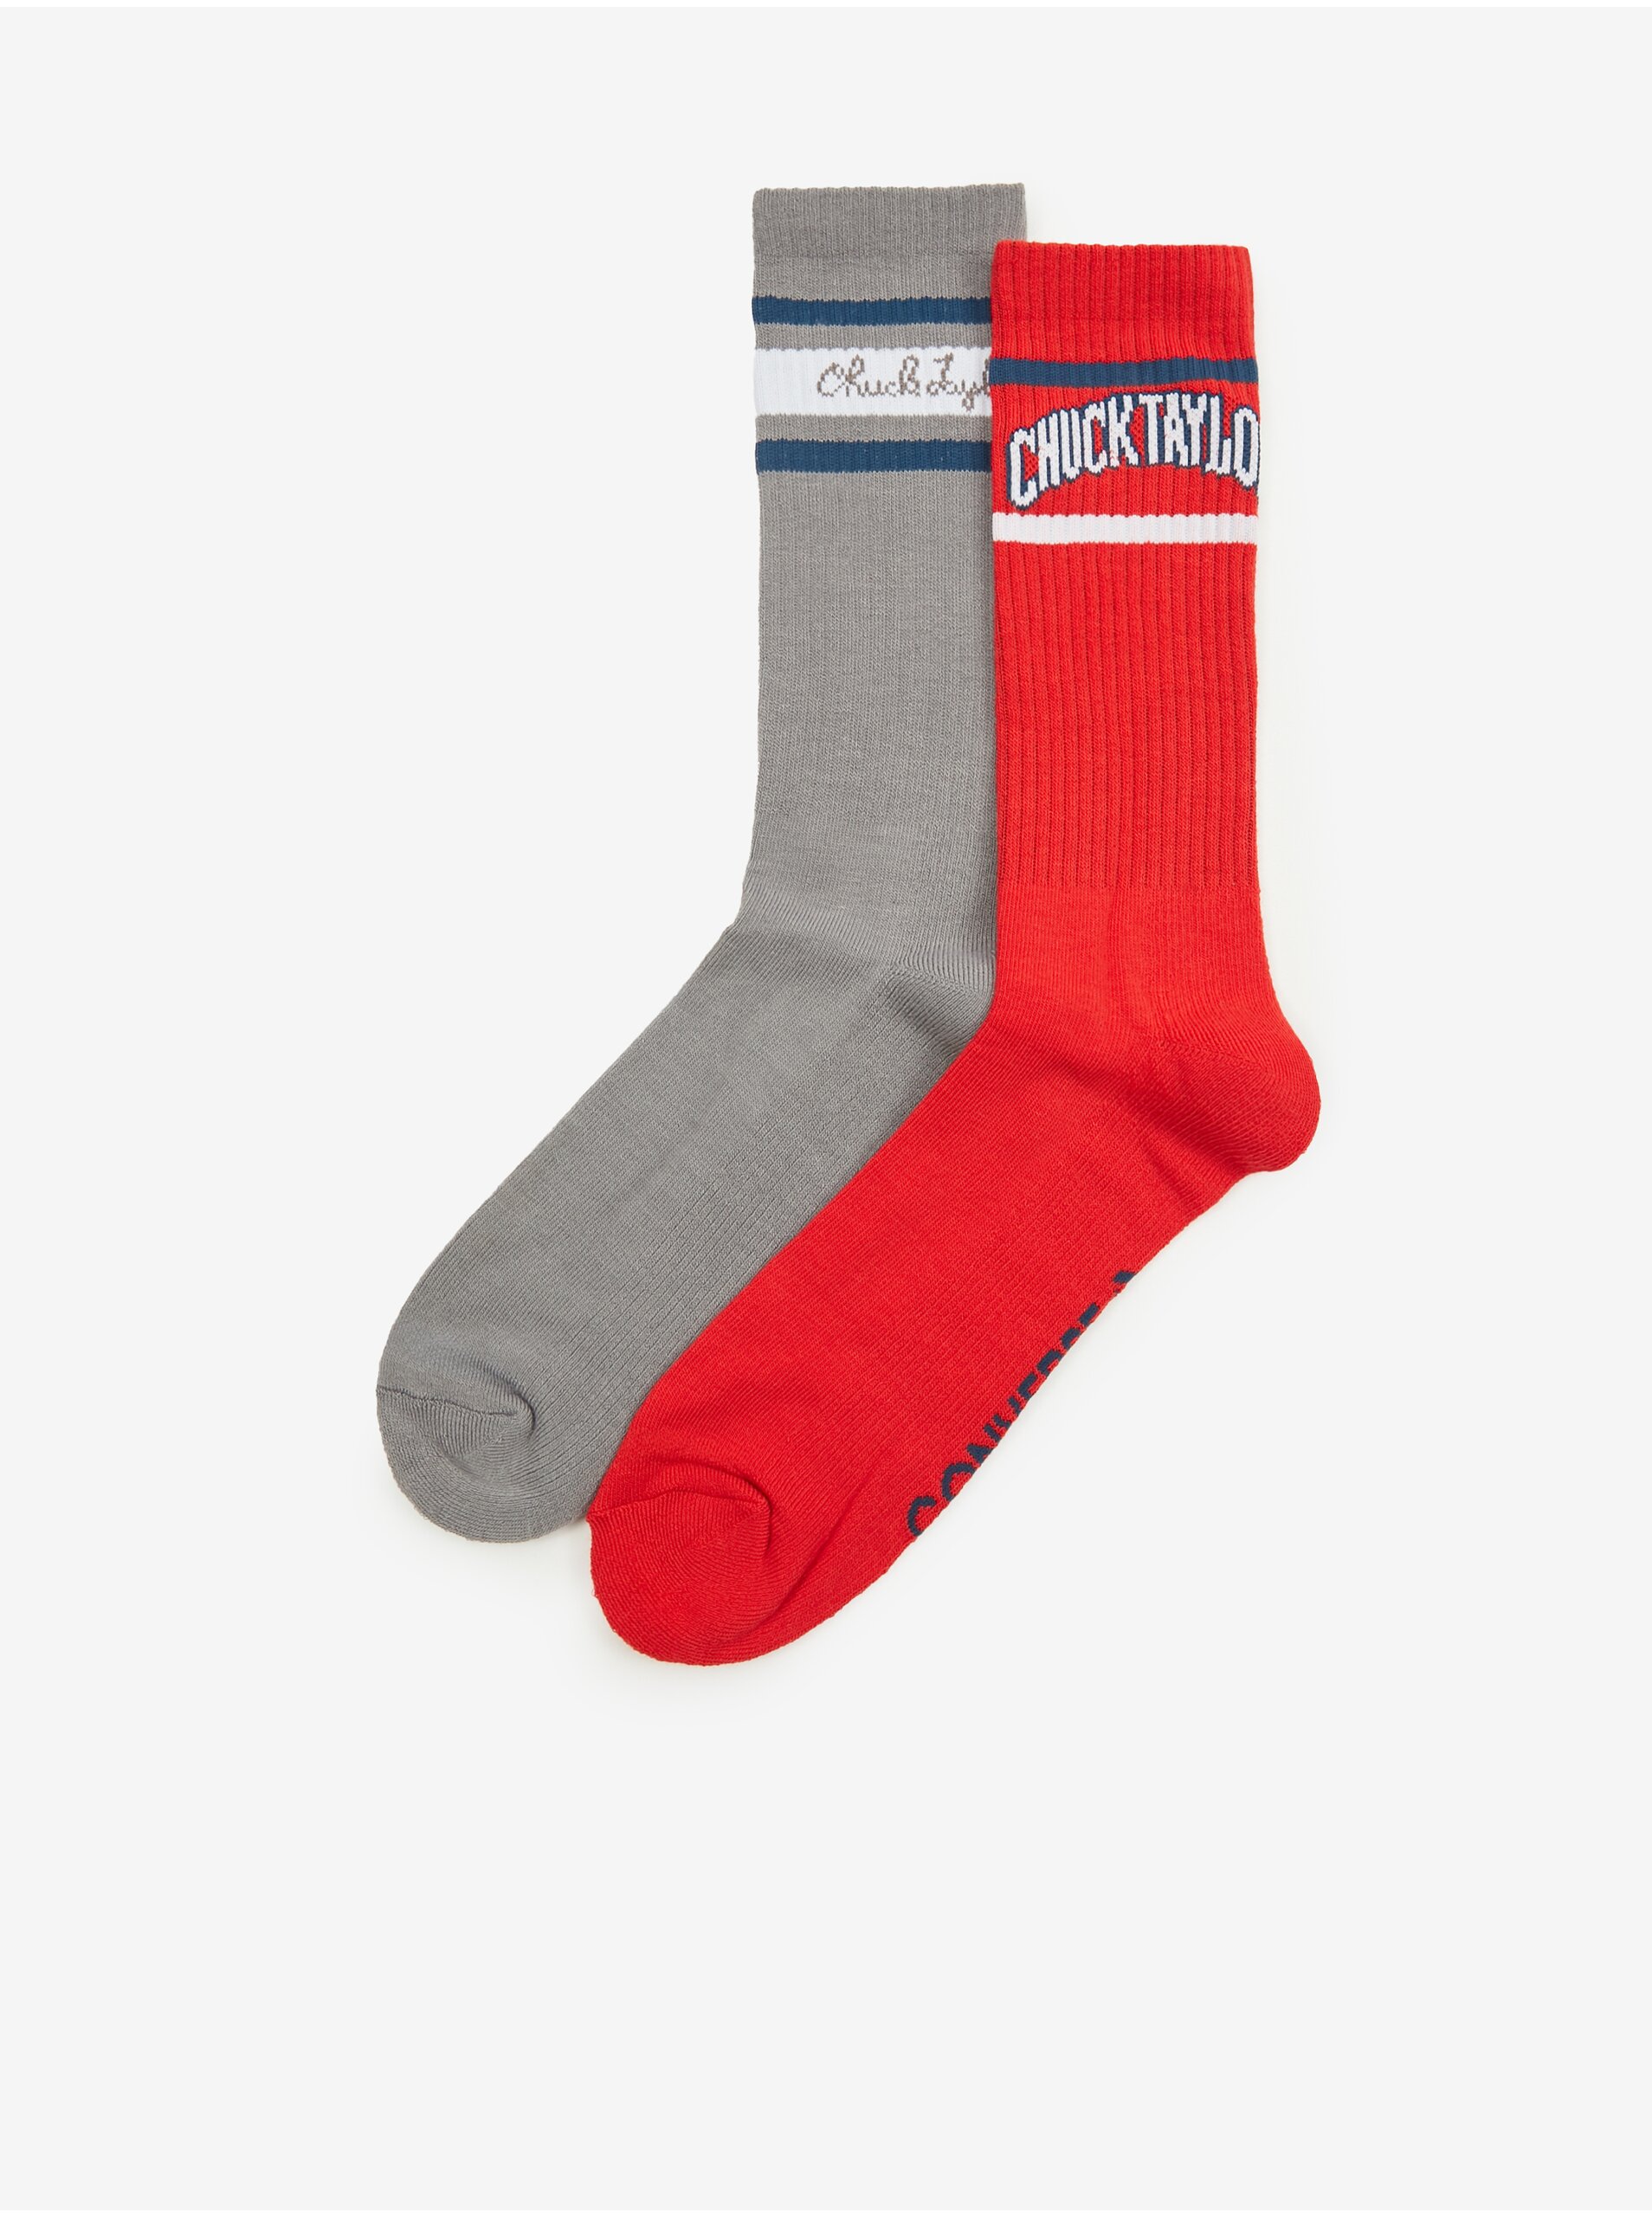 Lacno Súprava dvoch párov pánskych ponožiek v červenej a šedej farbe Converse Chuck Taylor